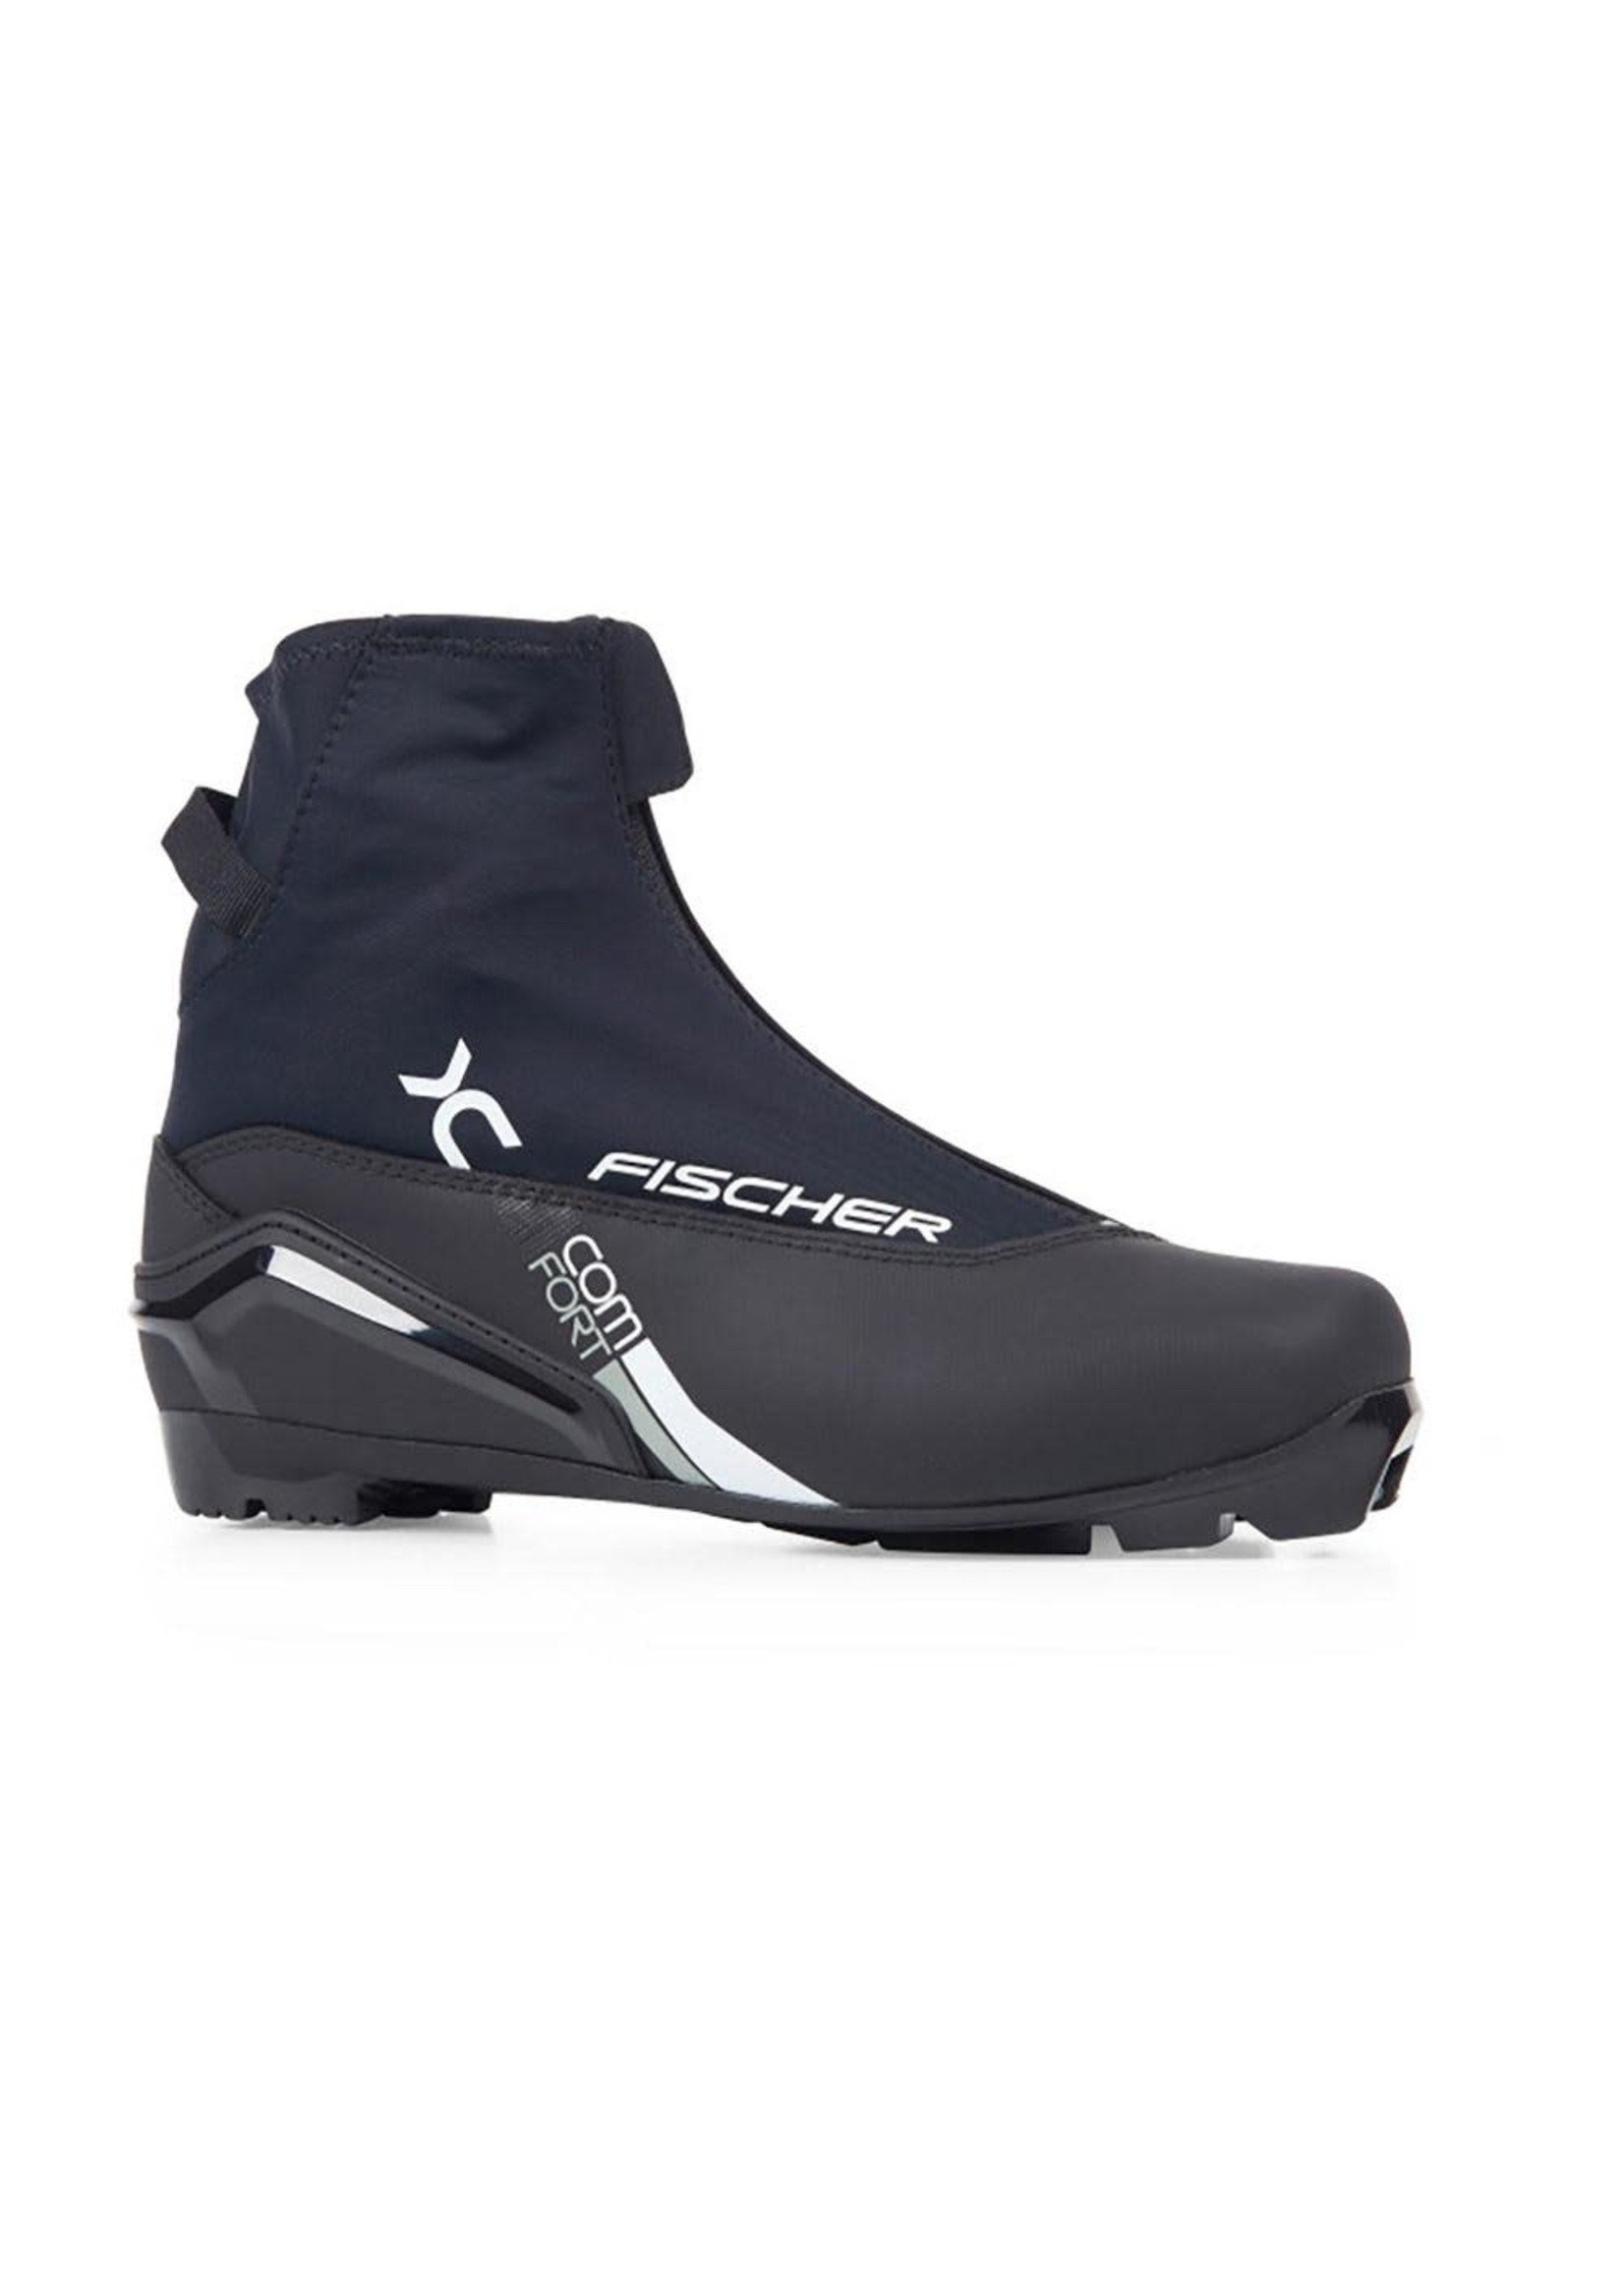 Fischer Fischer Cross Country Ski Boots XC Comfort